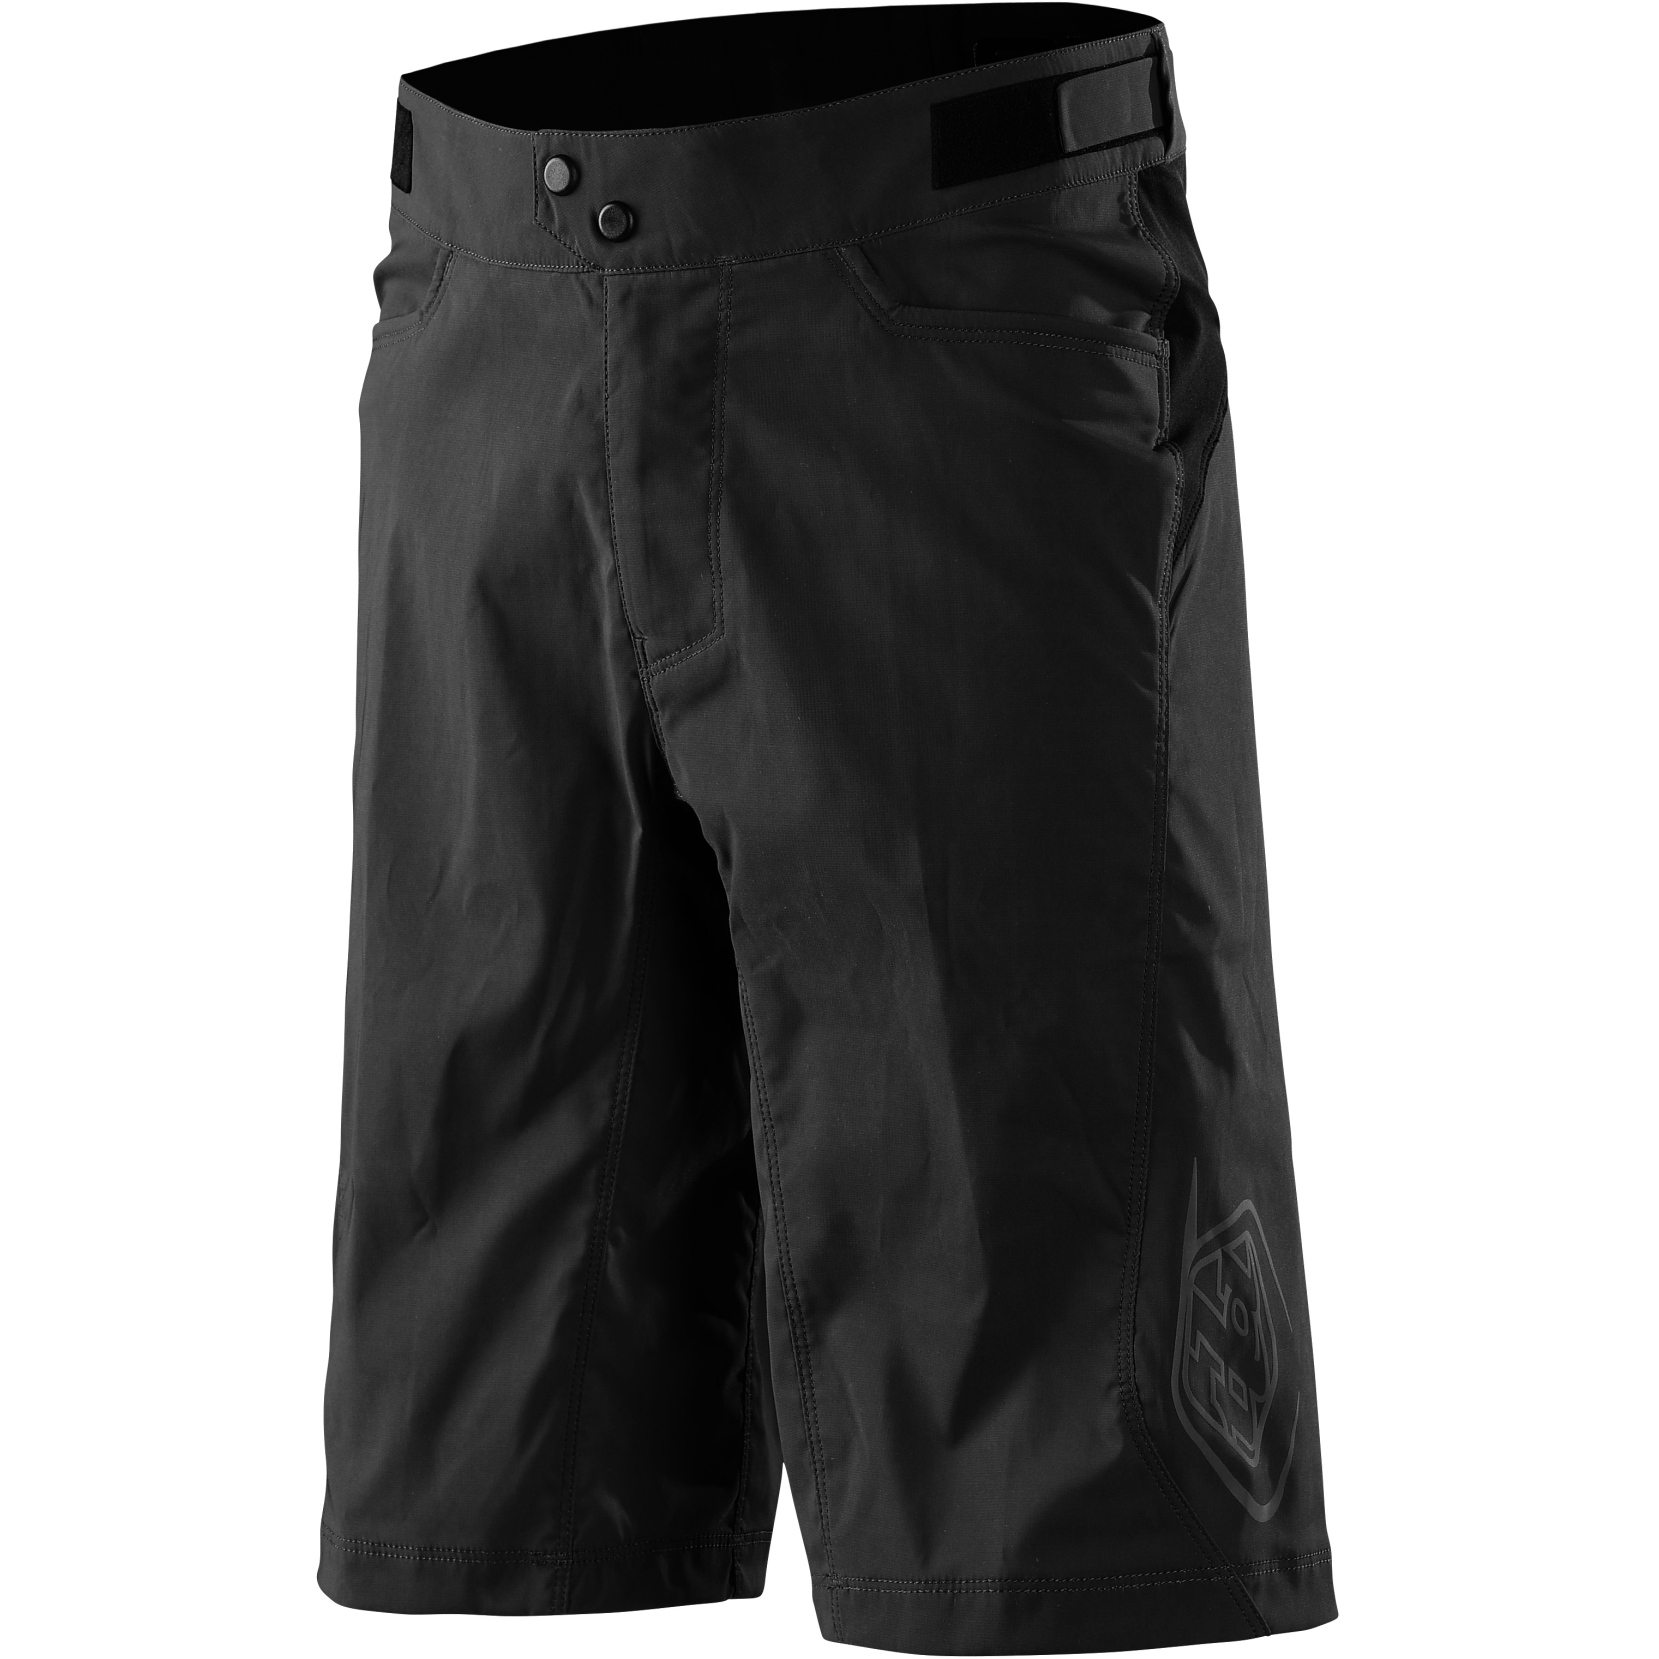 Produktbild von Troy Lee Designs Flowline Shorts - Solid Black